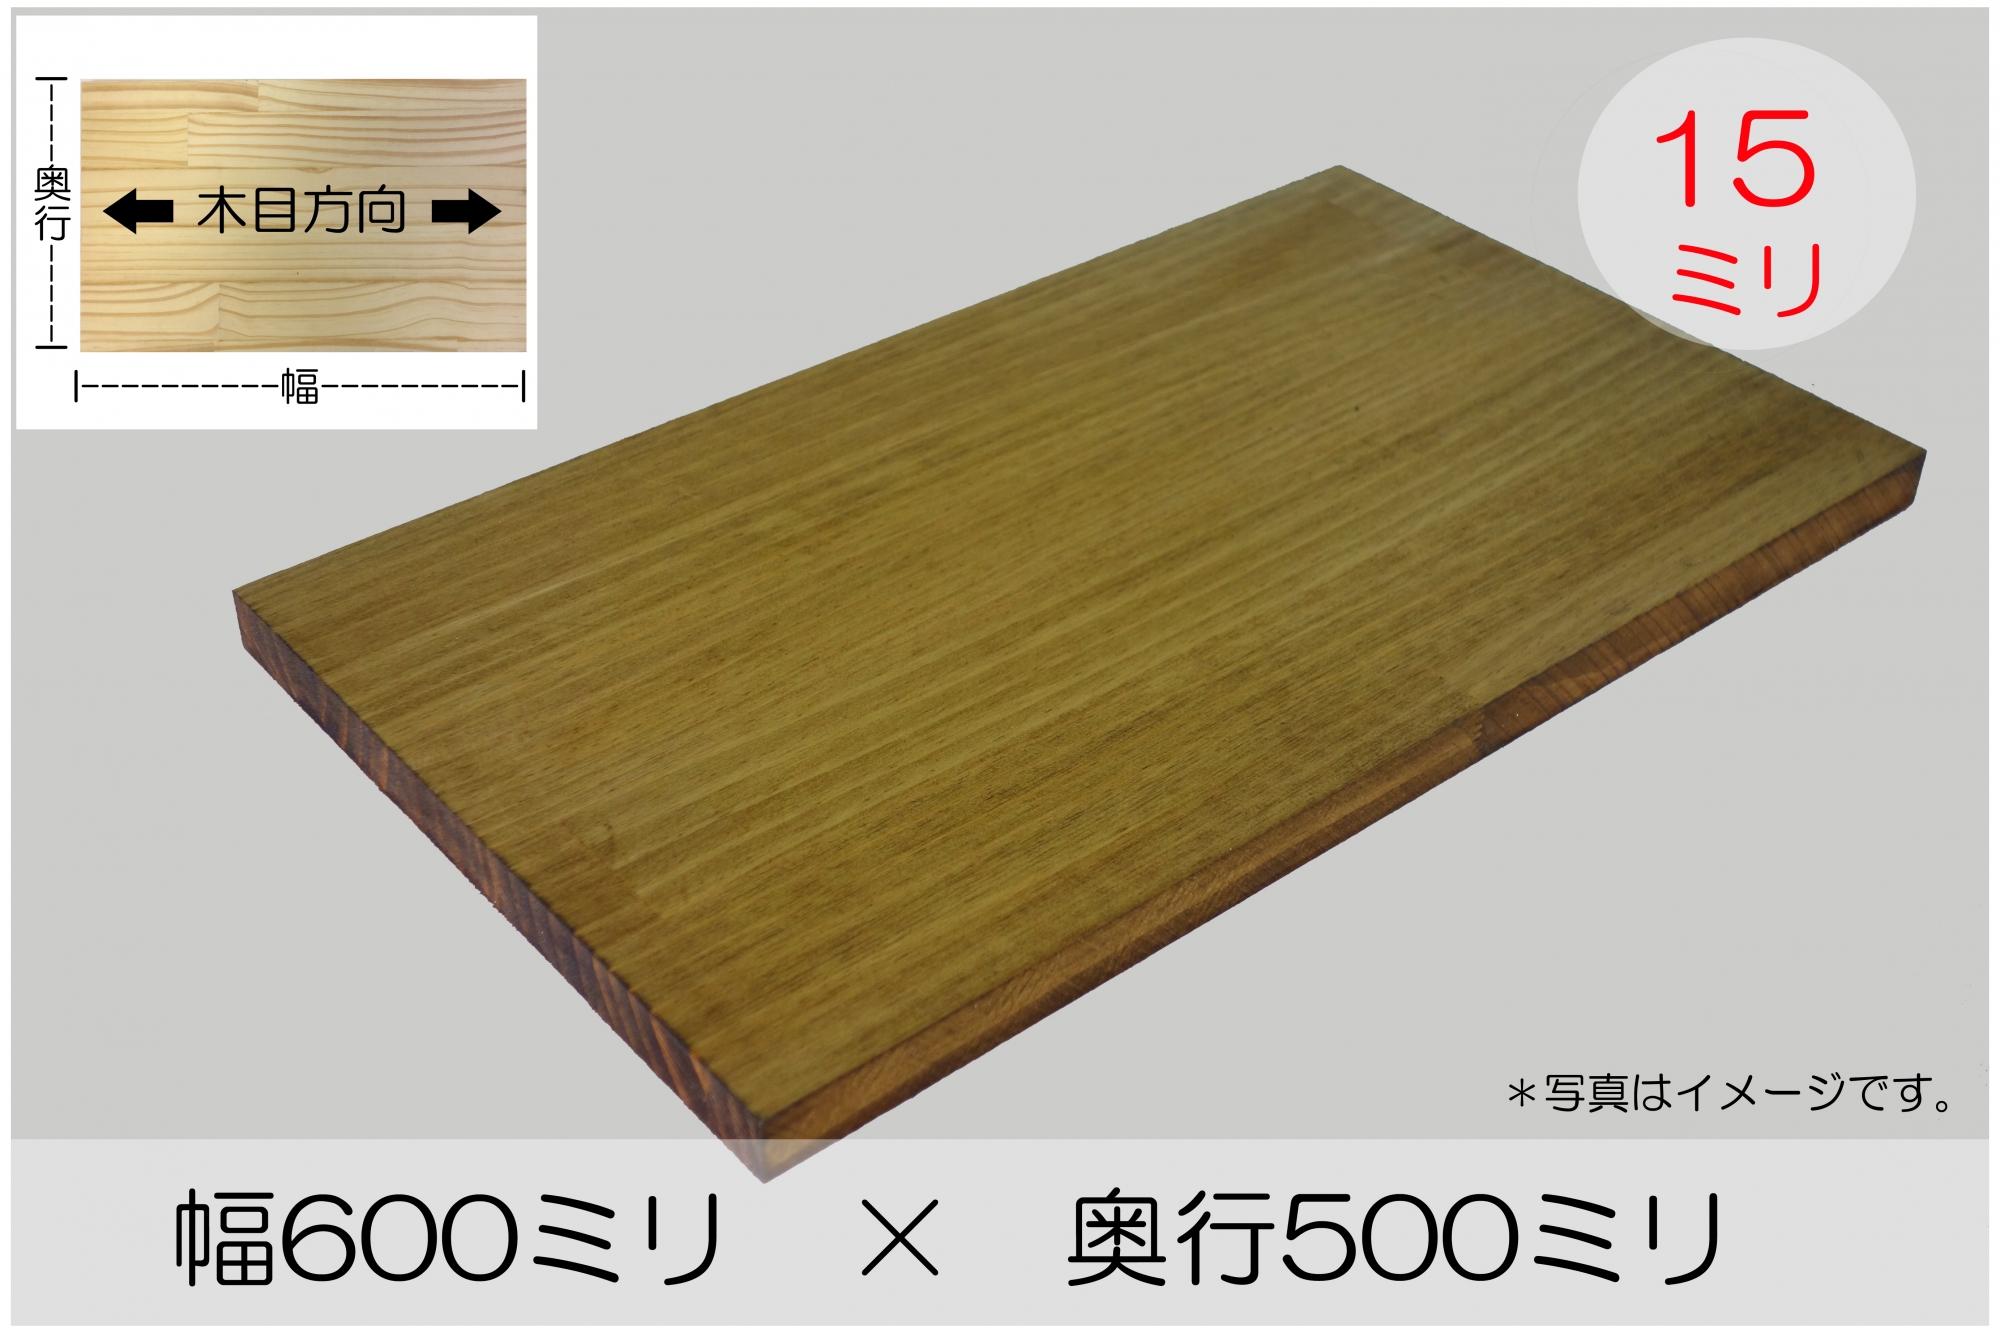 ゴム集成材25×600×1500mmDIY 棚 棚板 テーブル 木材 天板 板 集成材 BRIWAX ブライワックス - 9